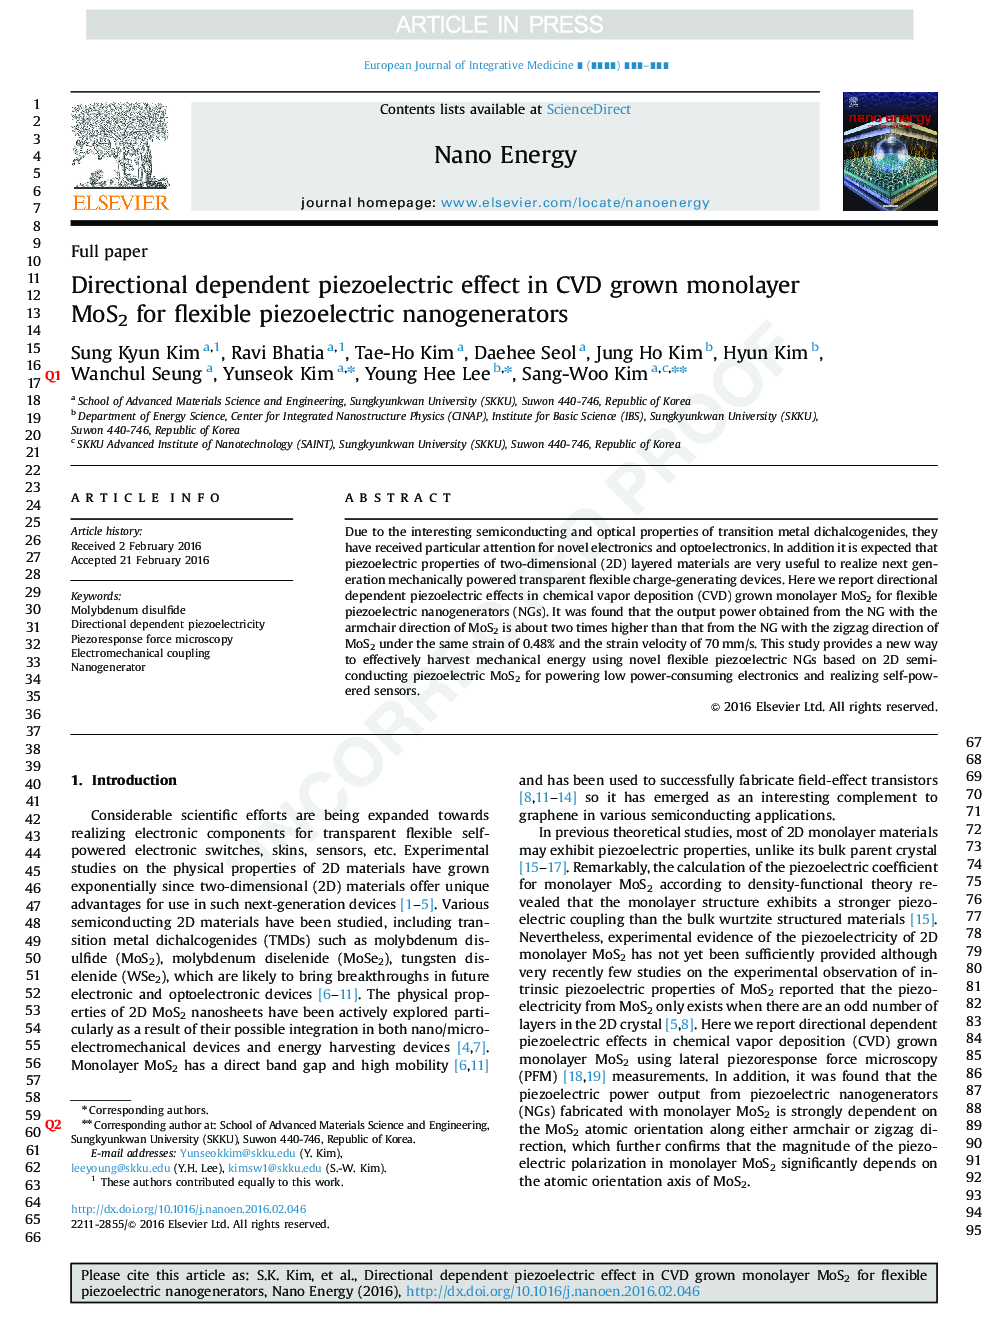 Directional dependent piezoelectric effect in CVD grown monolayer MoS2 for flexible piezoelectric nanogenerators